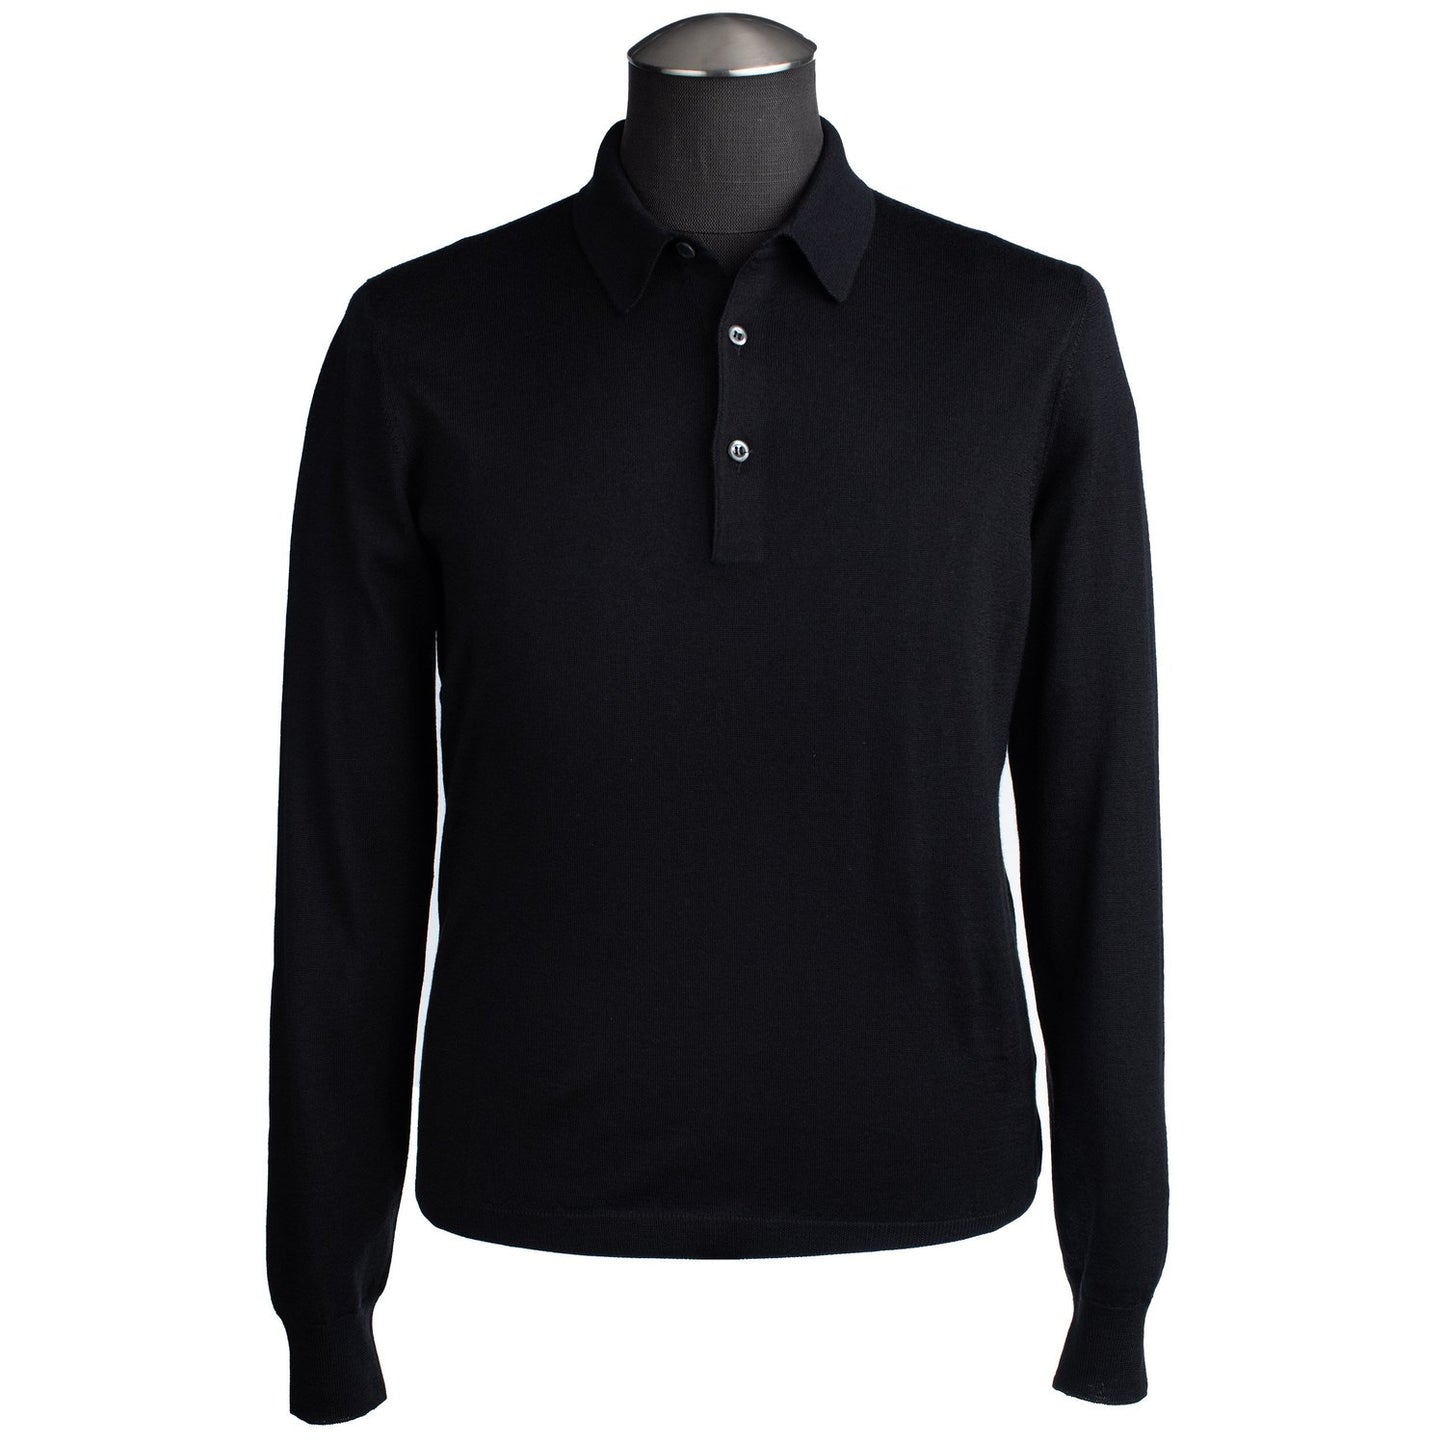 Gran Sasso Silk and Merino Wool Polo Sweater in Black